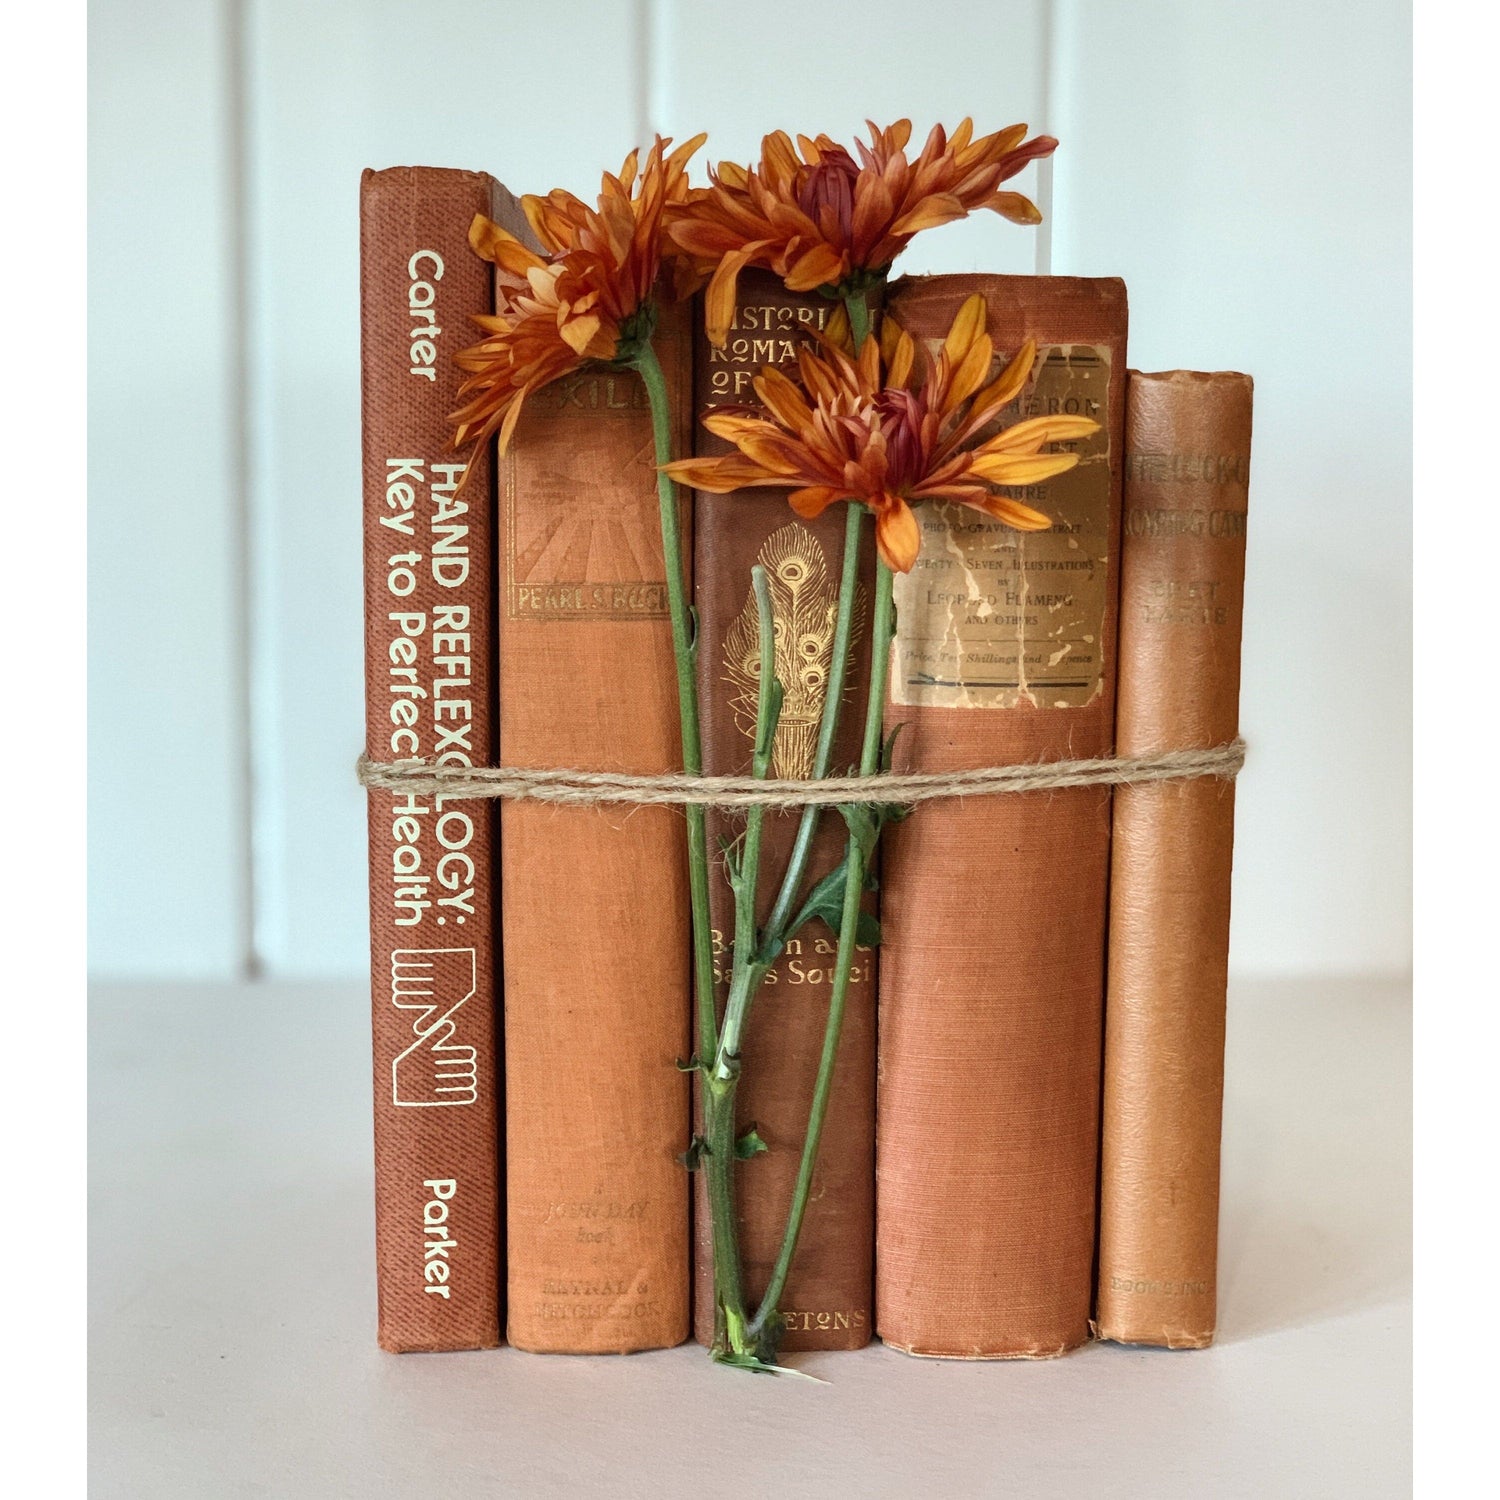 Peach Rust Orange Aesthetic Decorative Books, Bookshelf Deco